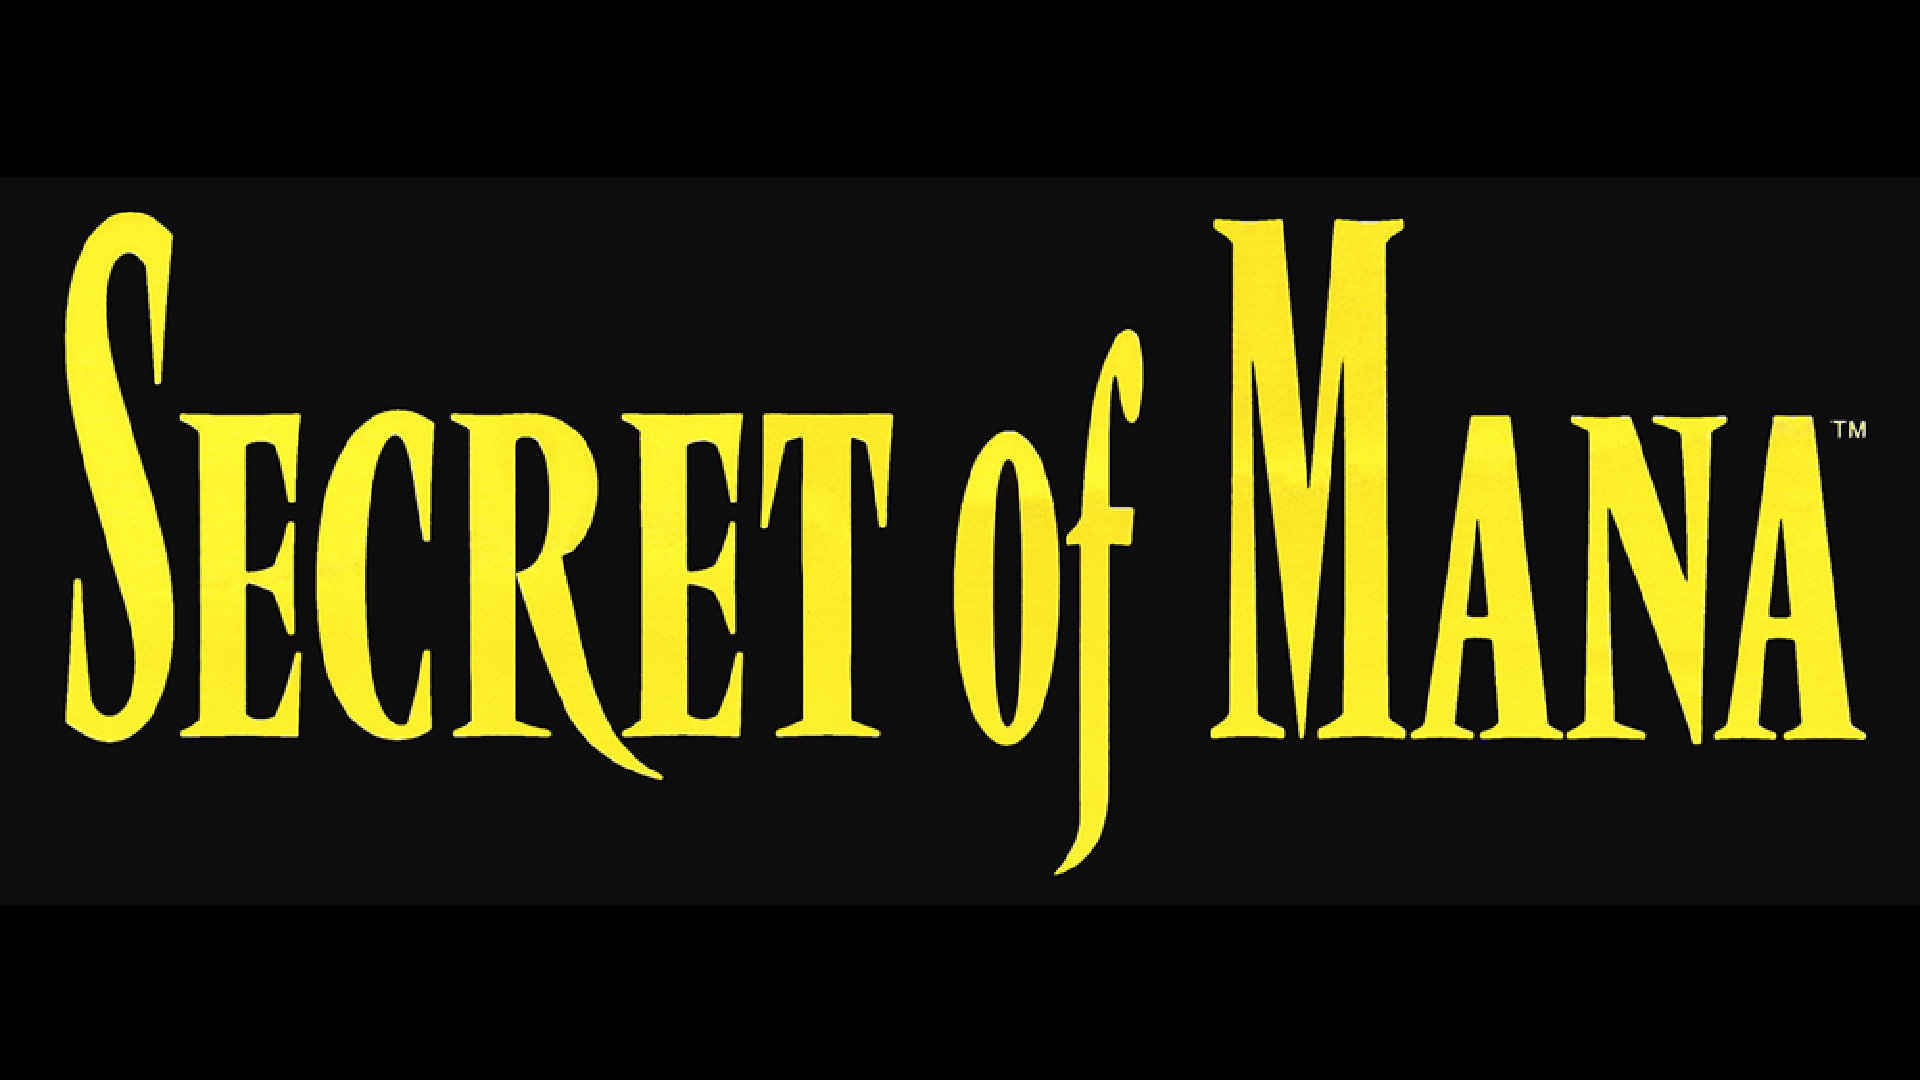 1920x1080 Secret of Mana